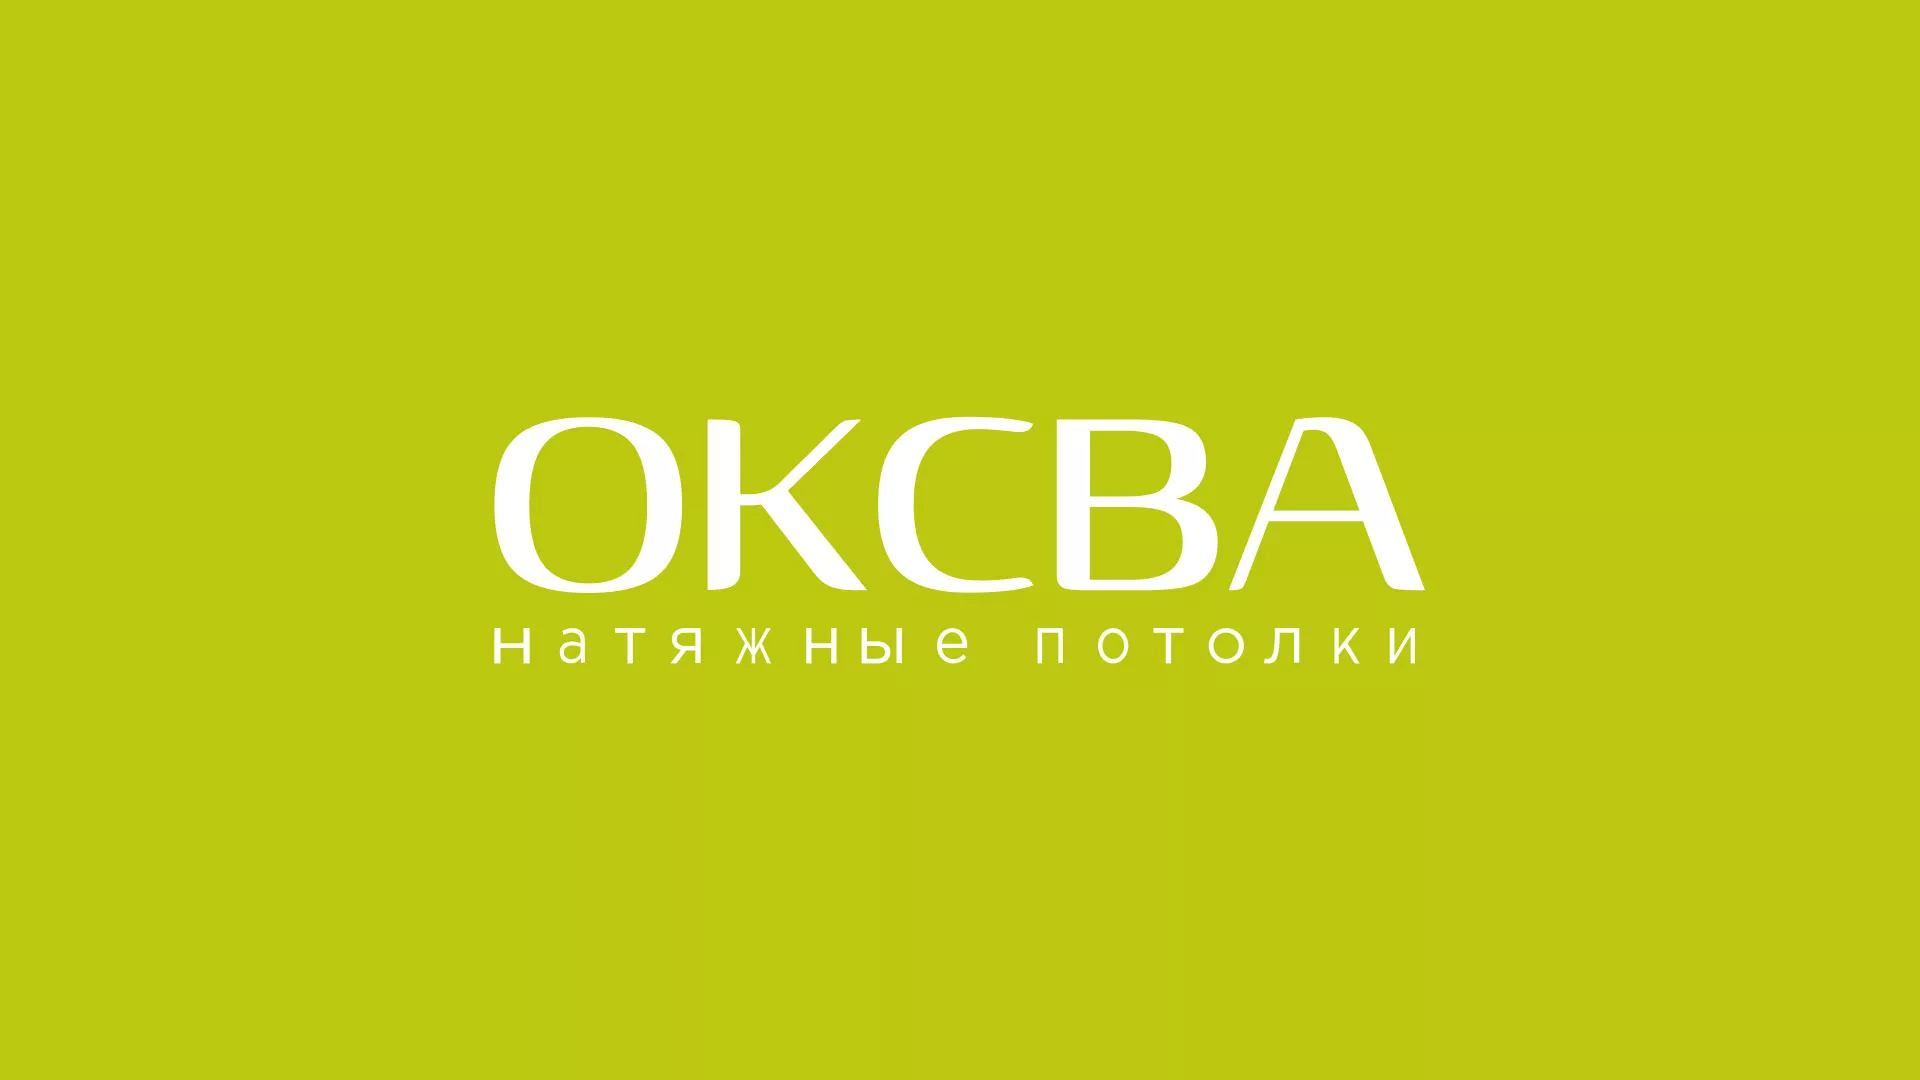 Создание сайта по продаже натяжных потолков для компании «ОКСВА» в Звенигово